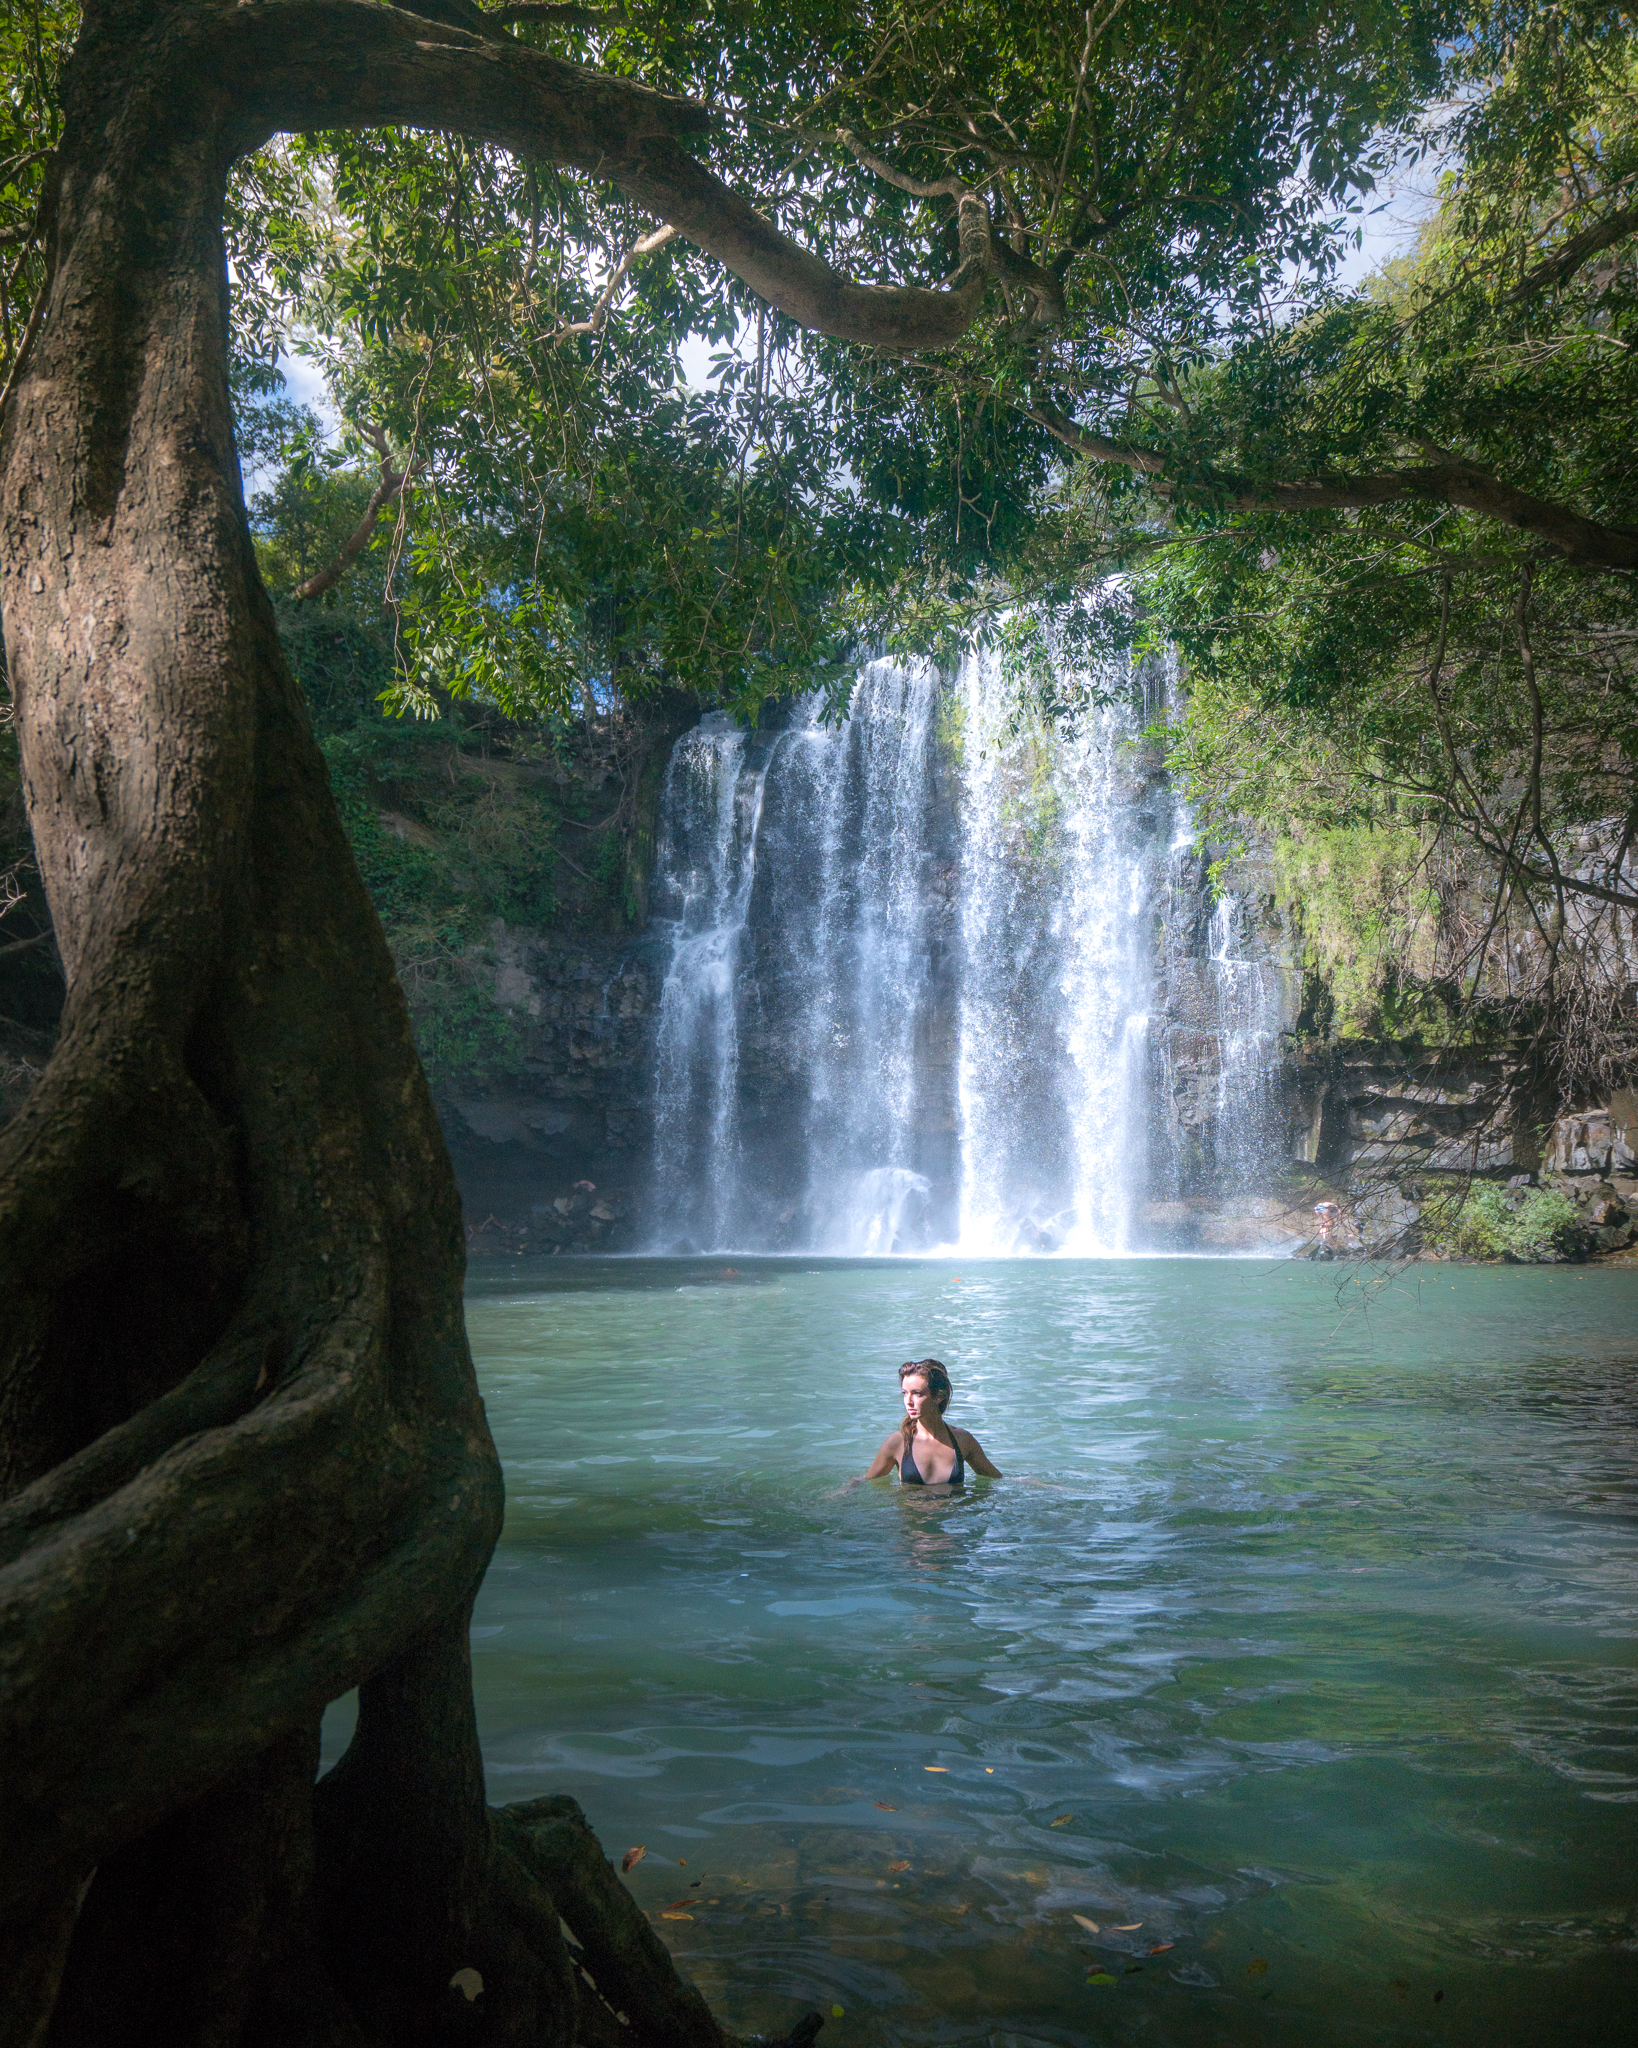 Swimming in Llanos de Cortez Waterfall, Costa Rica.